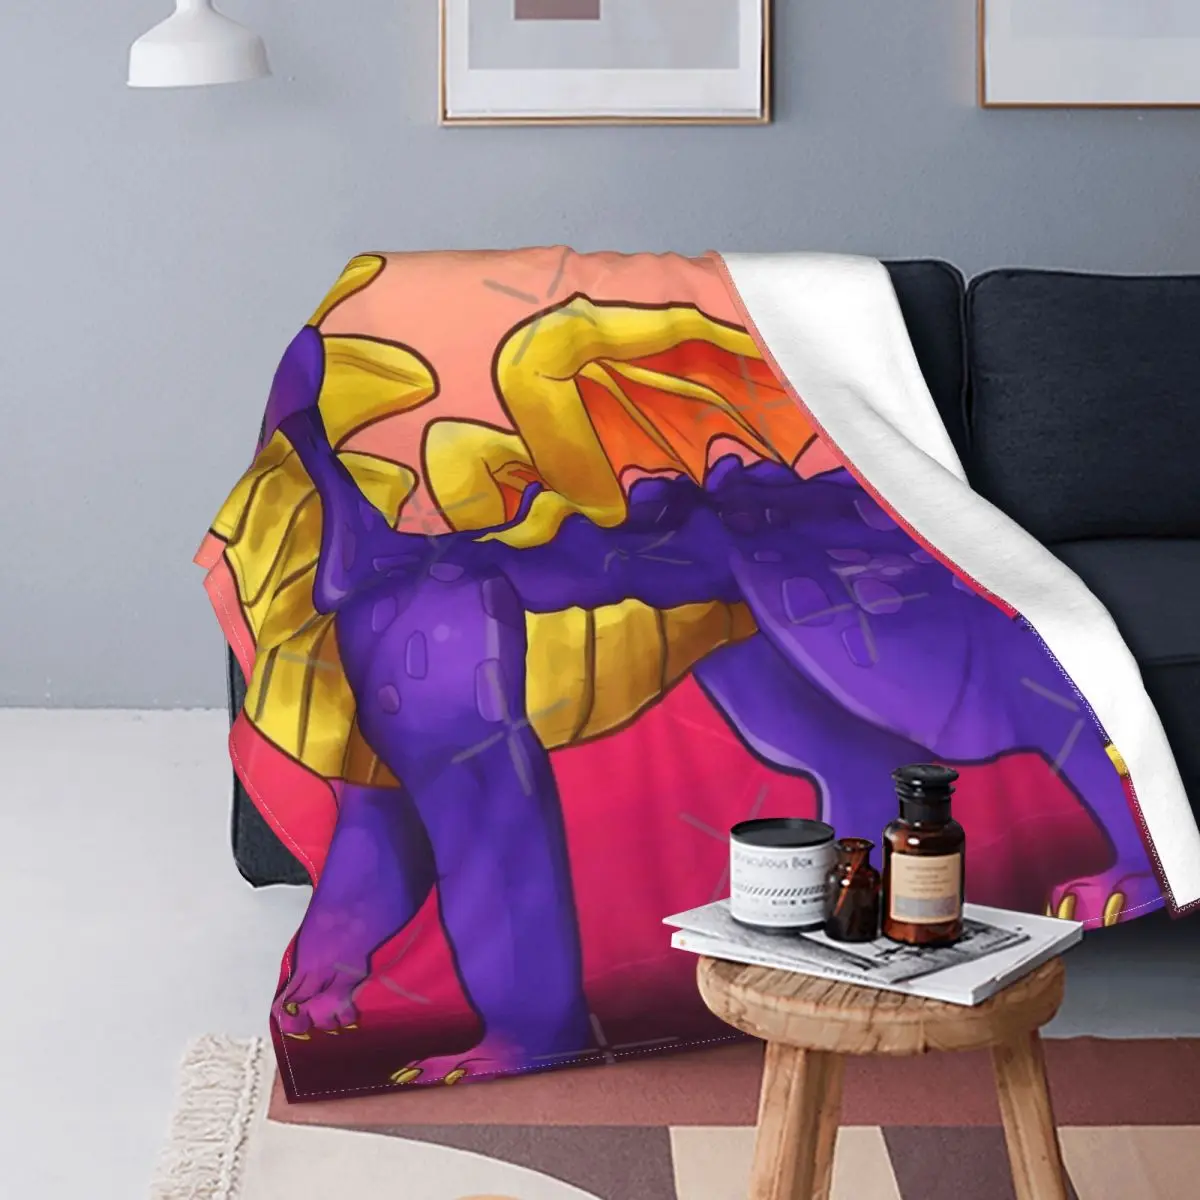 

Spyro повторно воспламеняемое 4 одеяло покрывало для кровати плед покрывало 135 муслиновое одеяло постельные принадлежности и покрывала